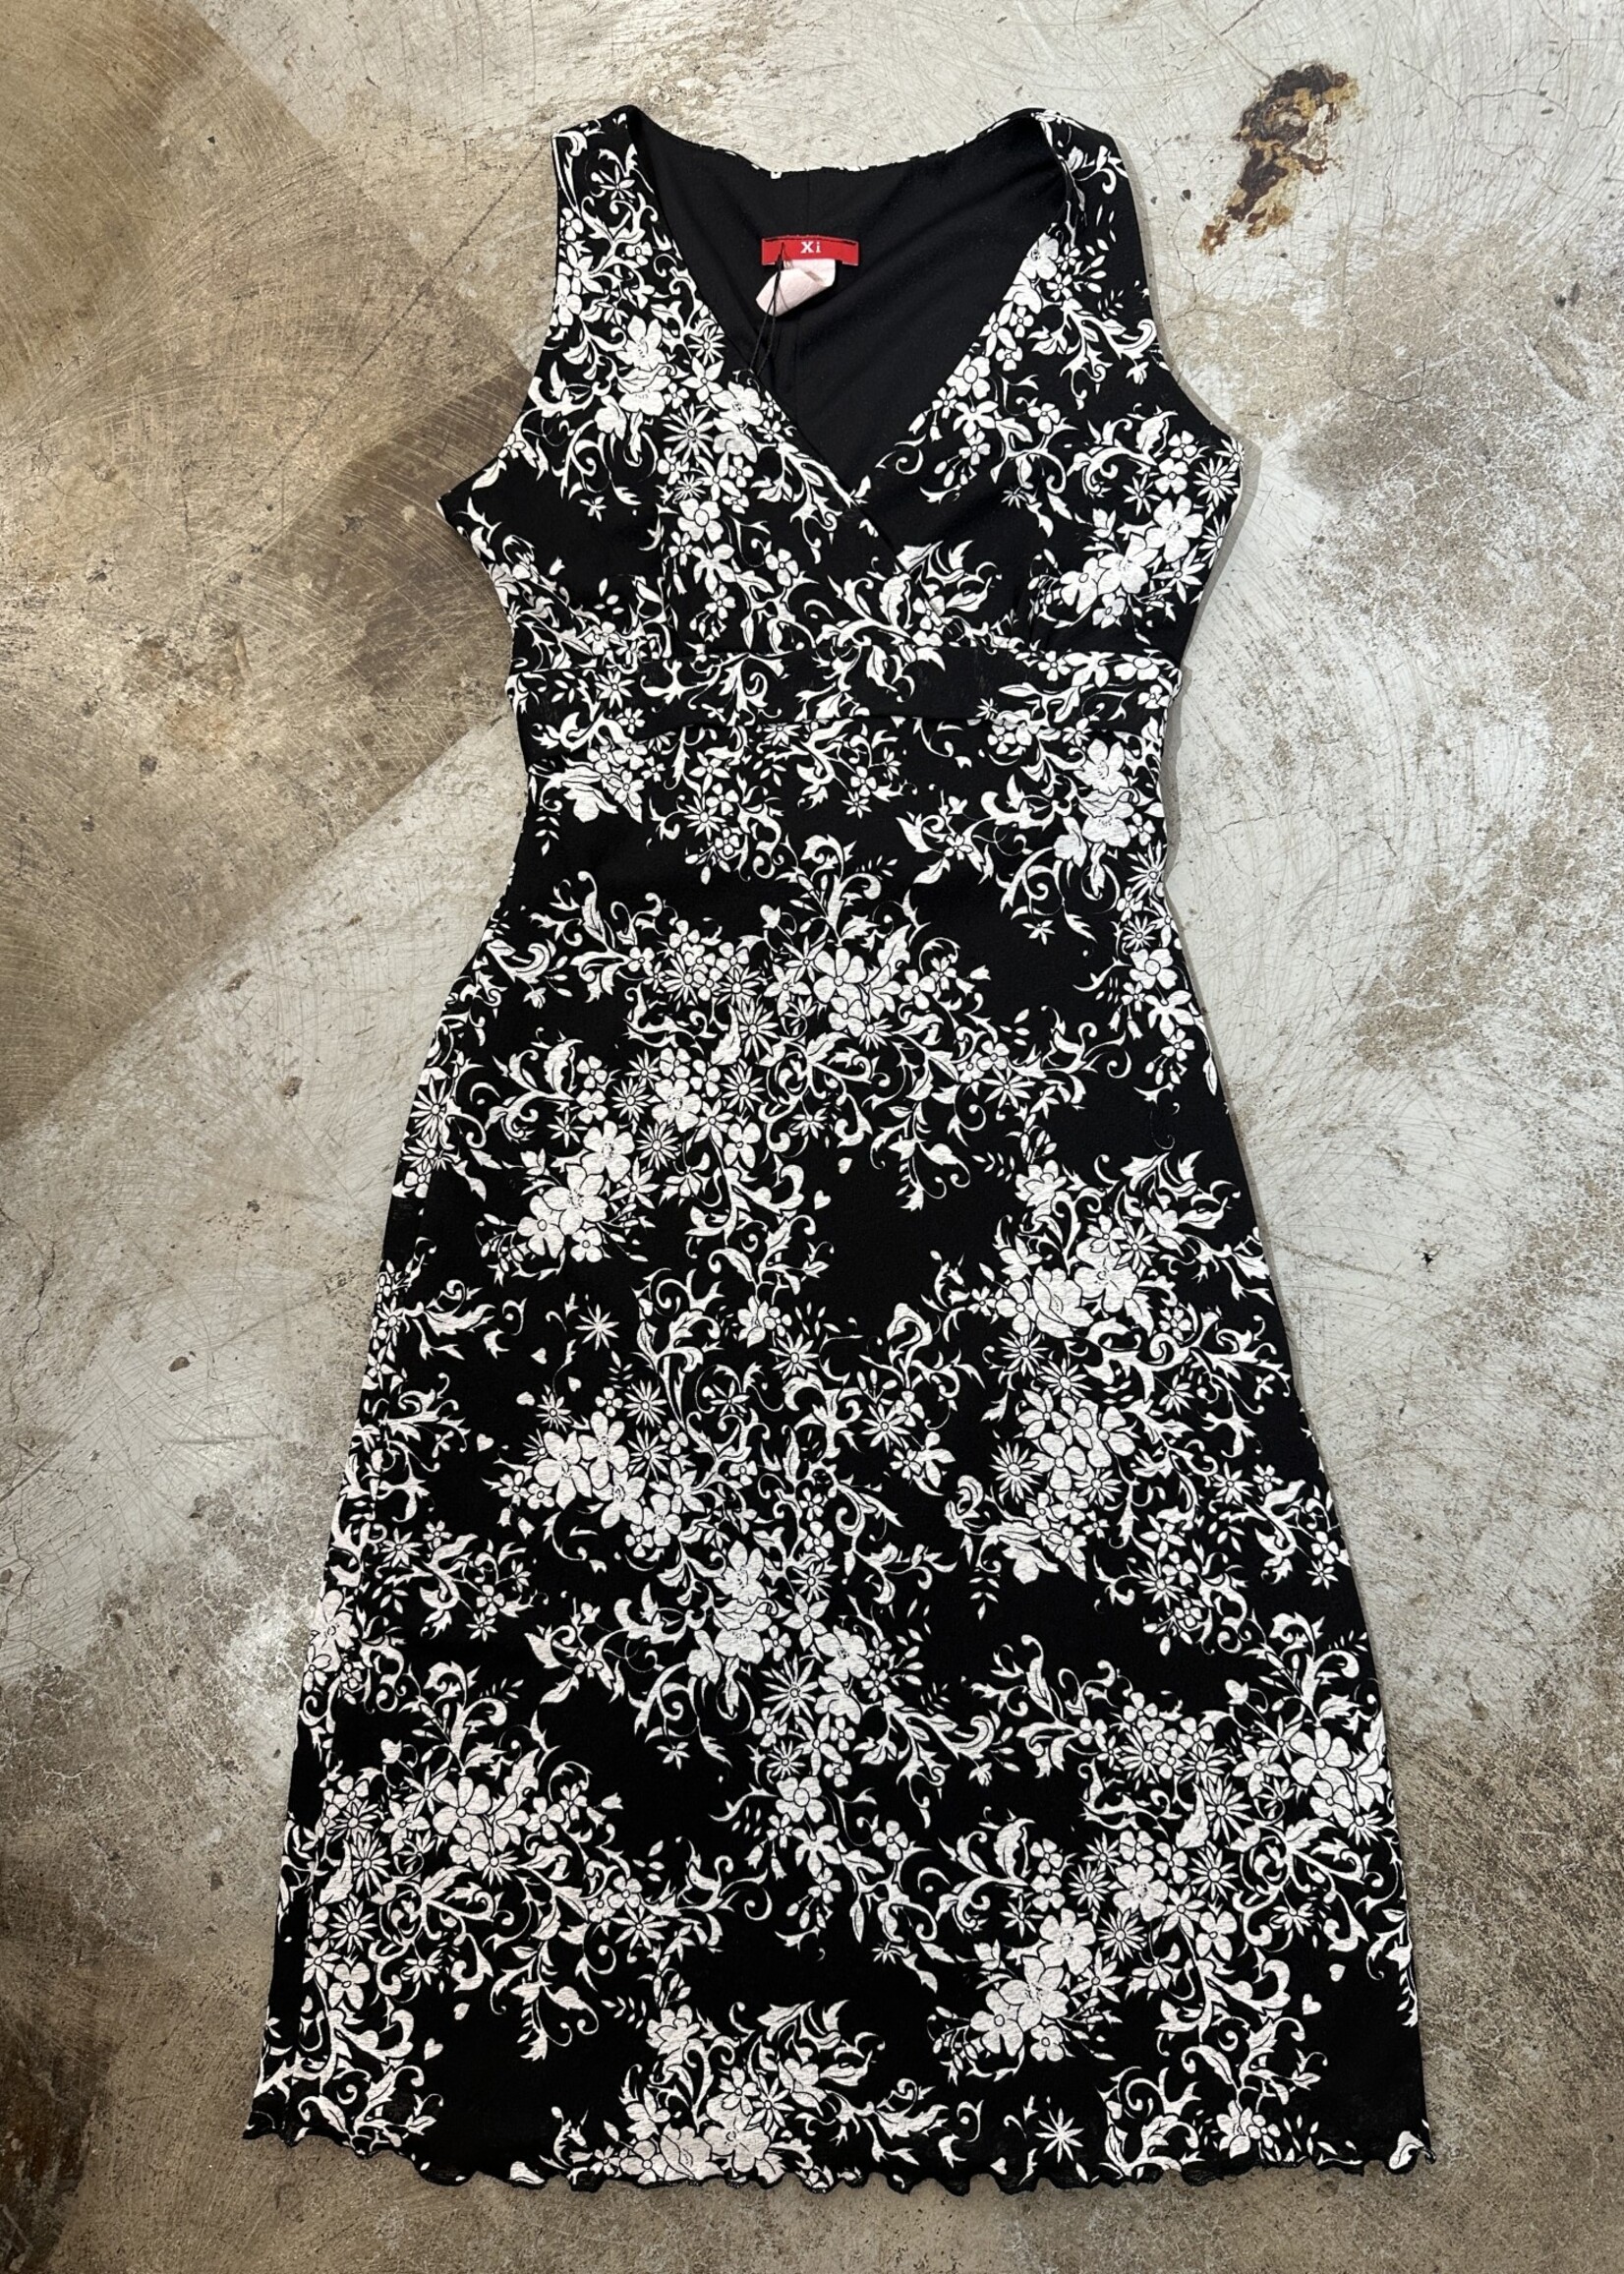 Xi Black White Floral Tank Dress S